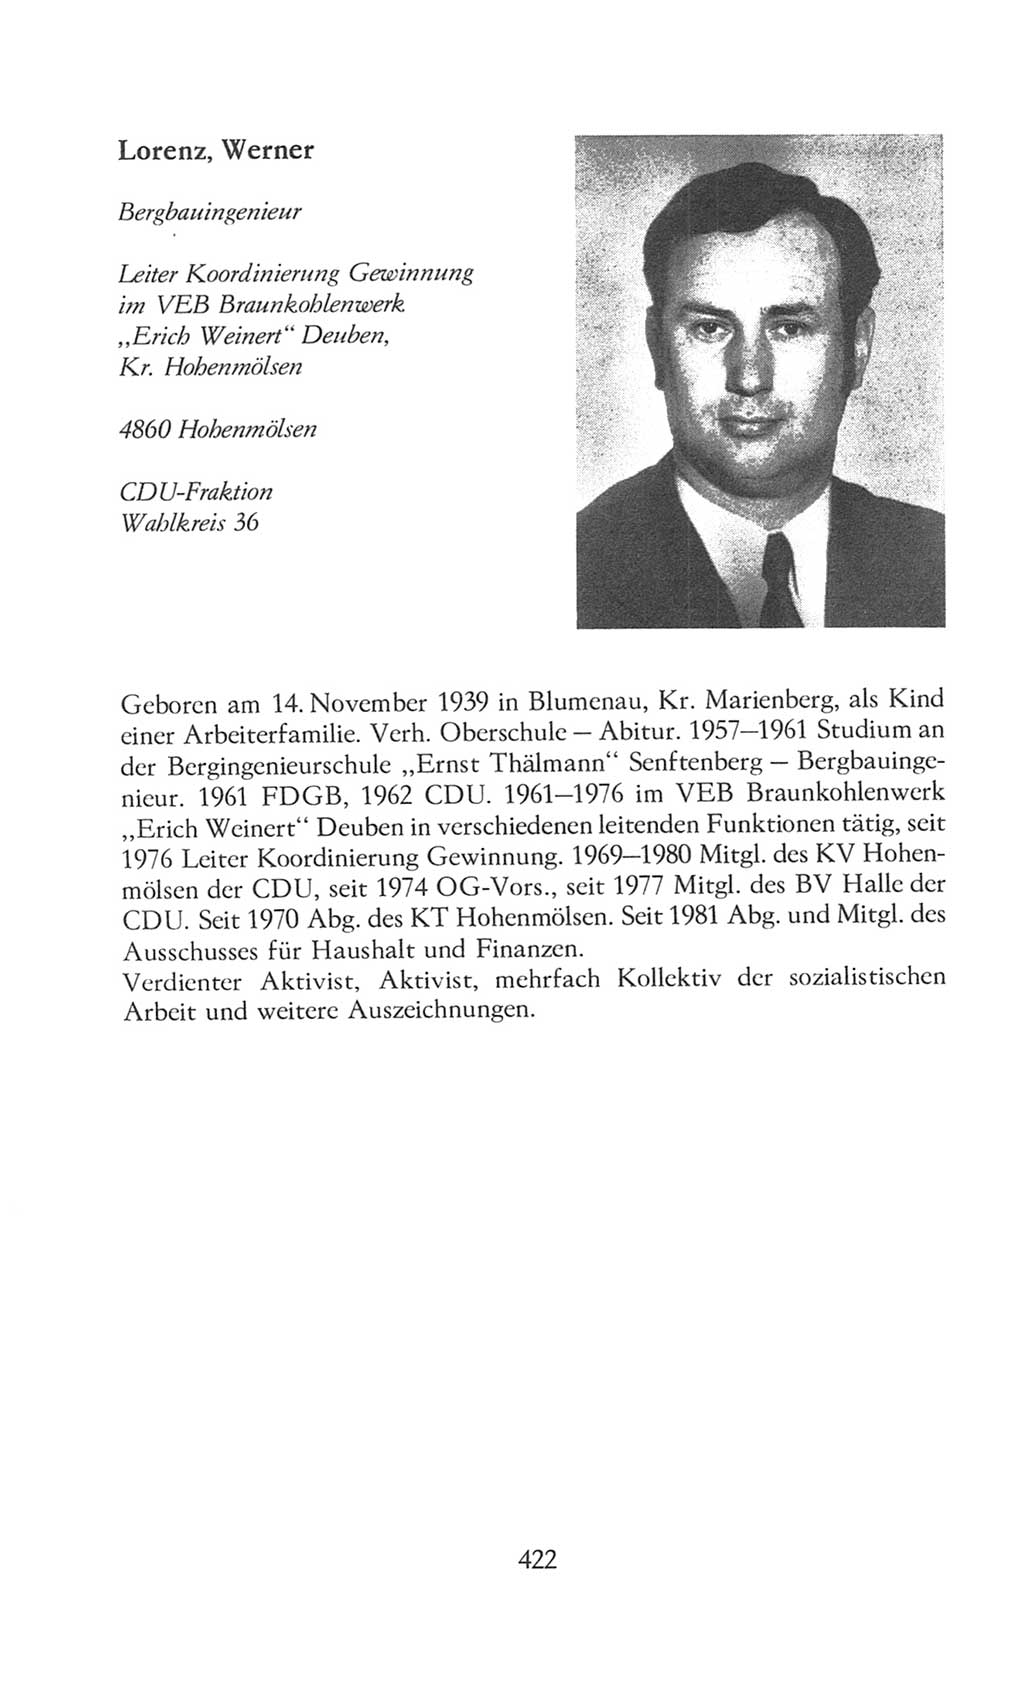 Volkskammer (VK) der Deutschen Demokratischen Republik (DDR), 8. Wahlperiode 1981-1986, Seite 422 (VK. DDR 8. WP. 1981-1986, S. 422)